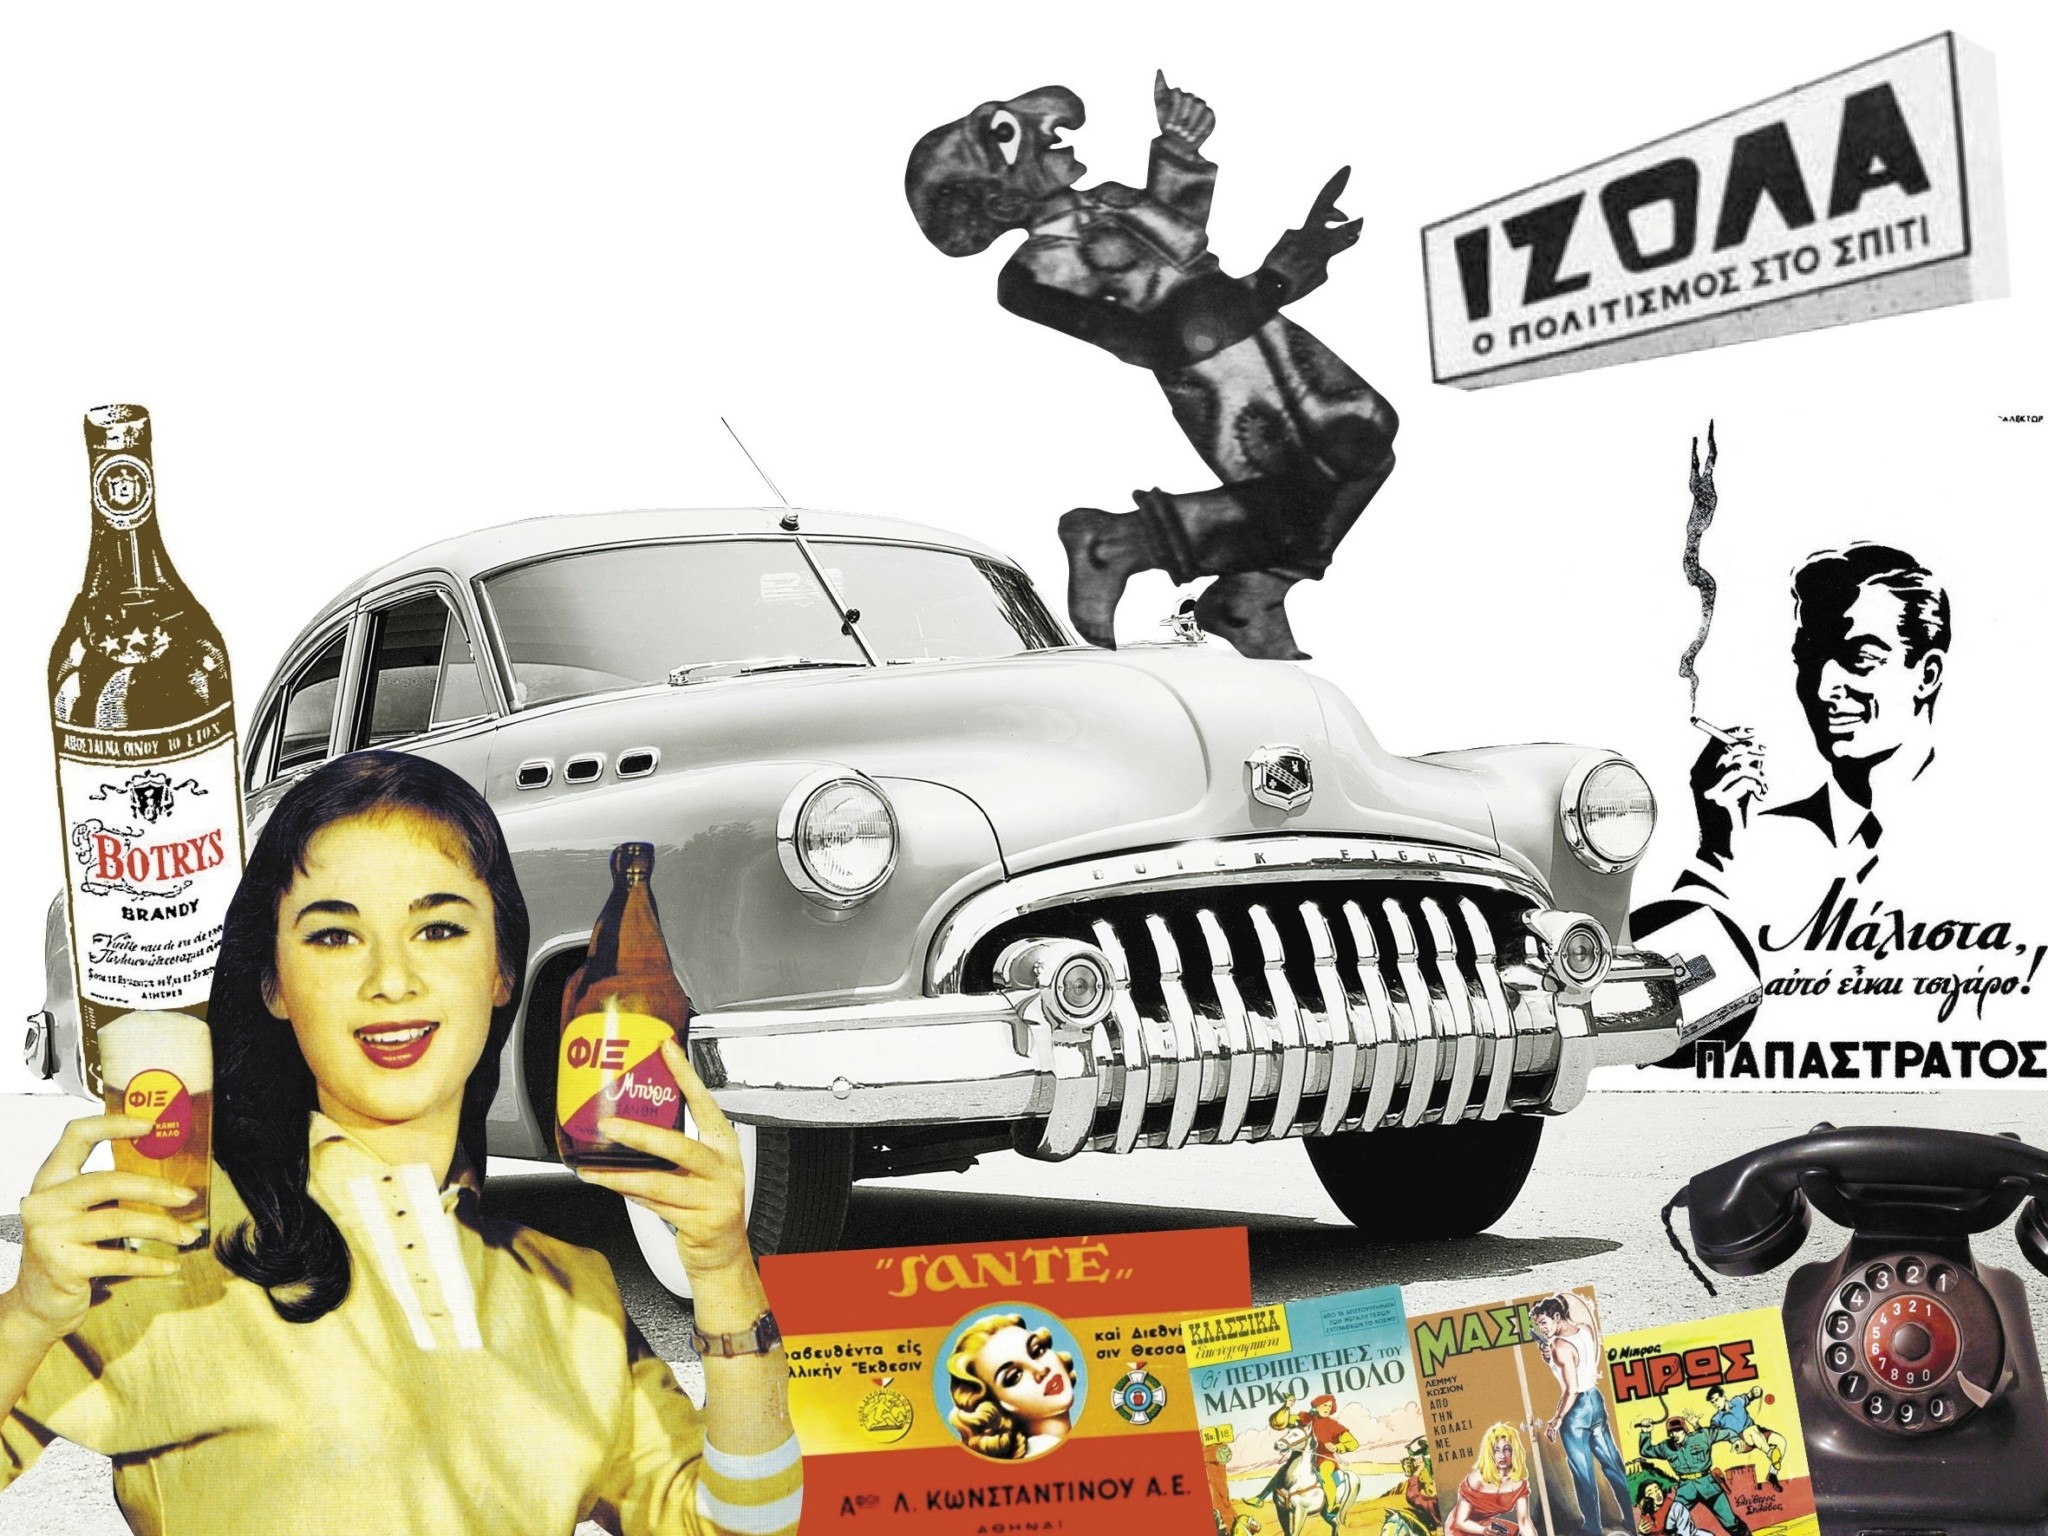 Τα brands που έγραψαν ιστορία τη δεκαετία του ’50: Ελβιέλα, Ιζόλα, Γάλα Βλάχας, Kolynos και Κλωσταί Πεταλούδας